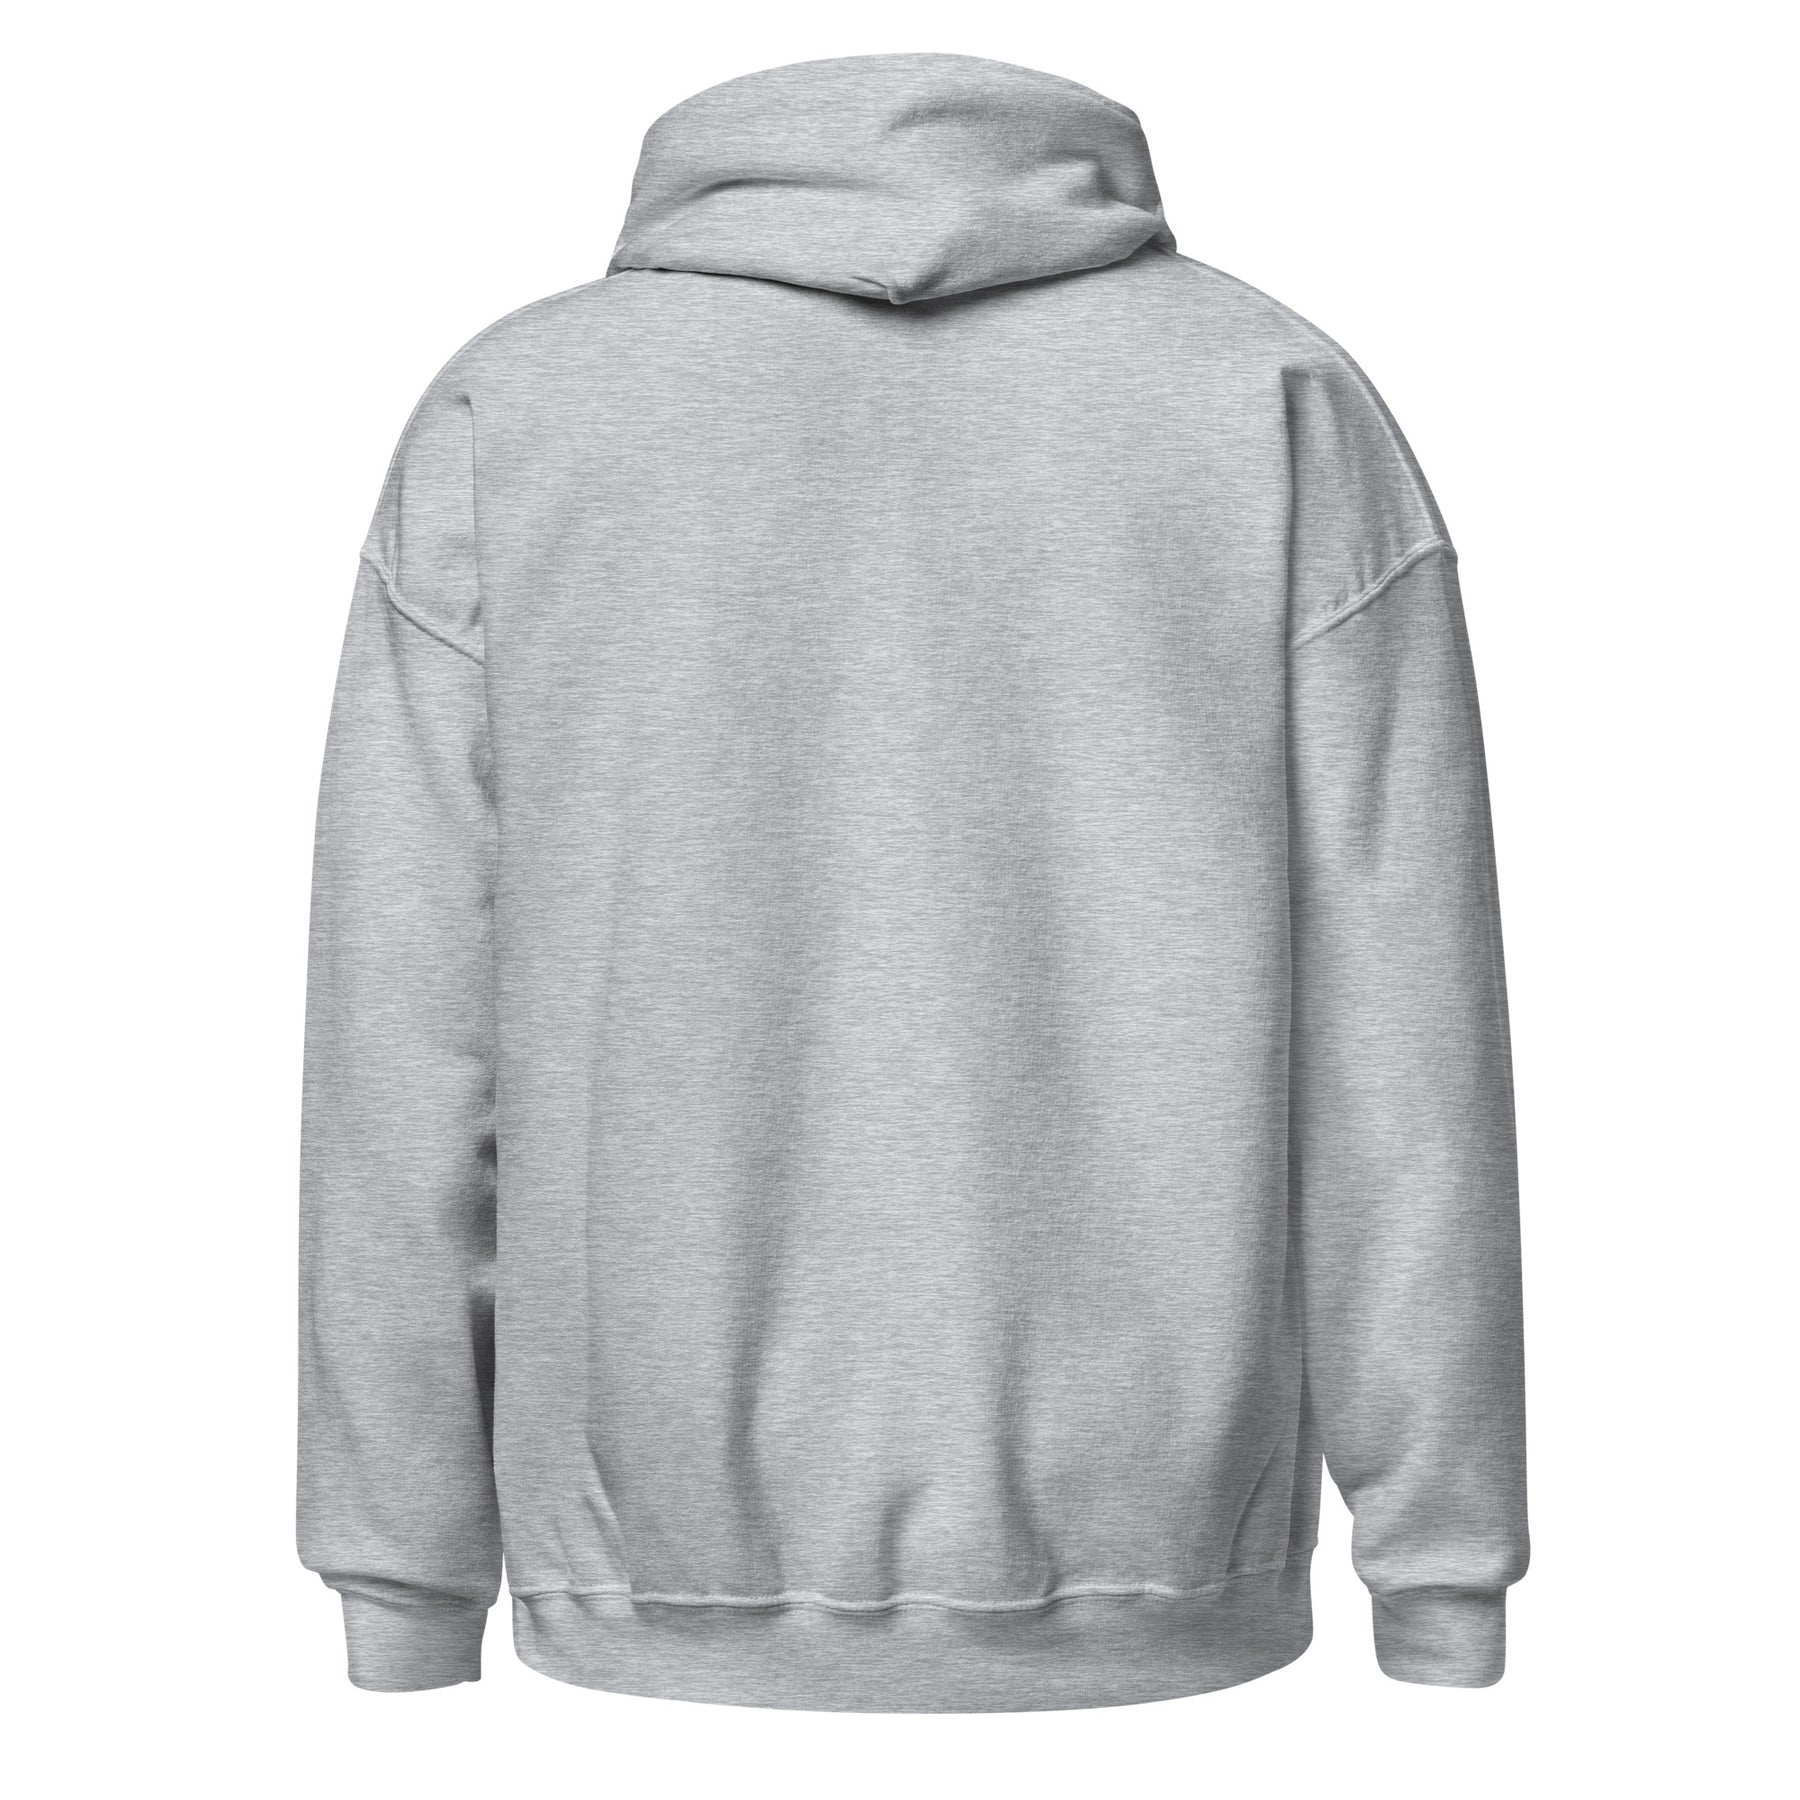 4 of 15: Fatherhood Virtues Unisex Hooded Sweatshirt (Sport Gray, Rear)